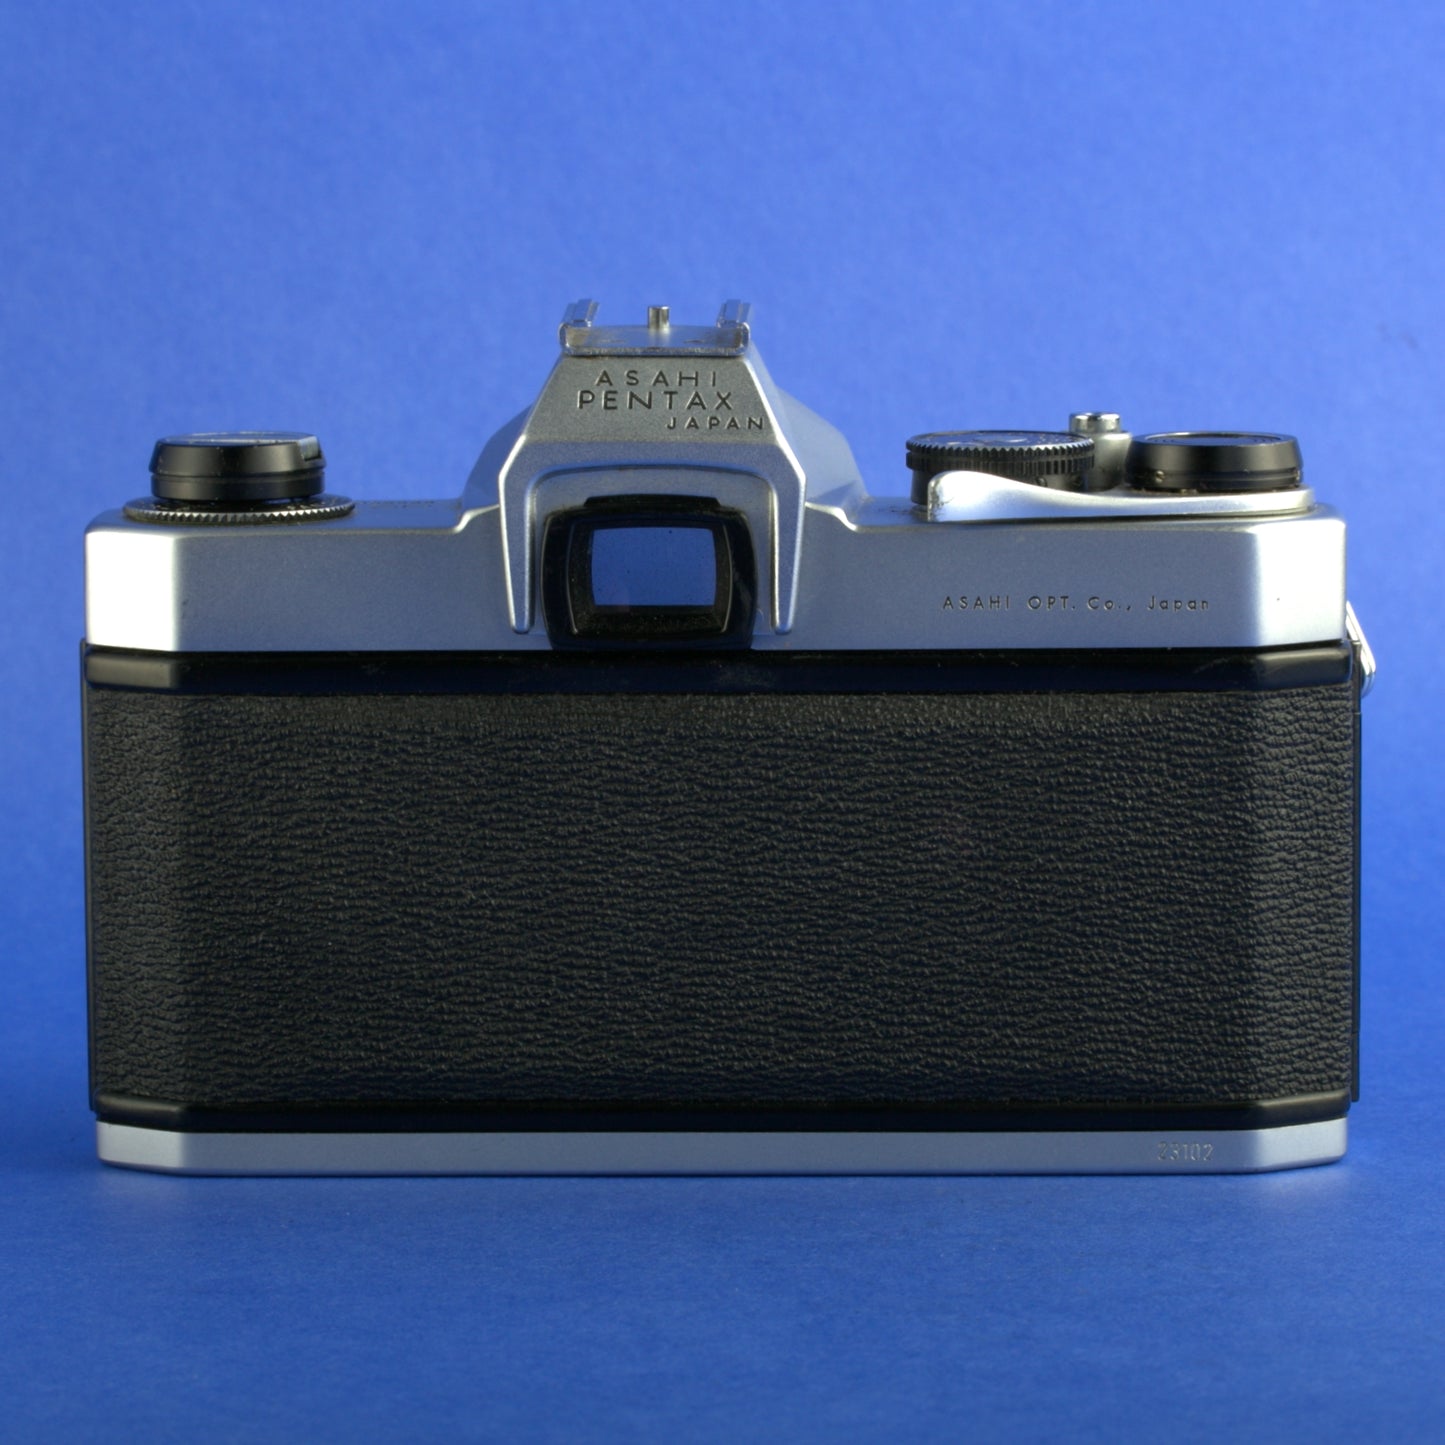 Pentax Spotmatic SP Film Camera Body